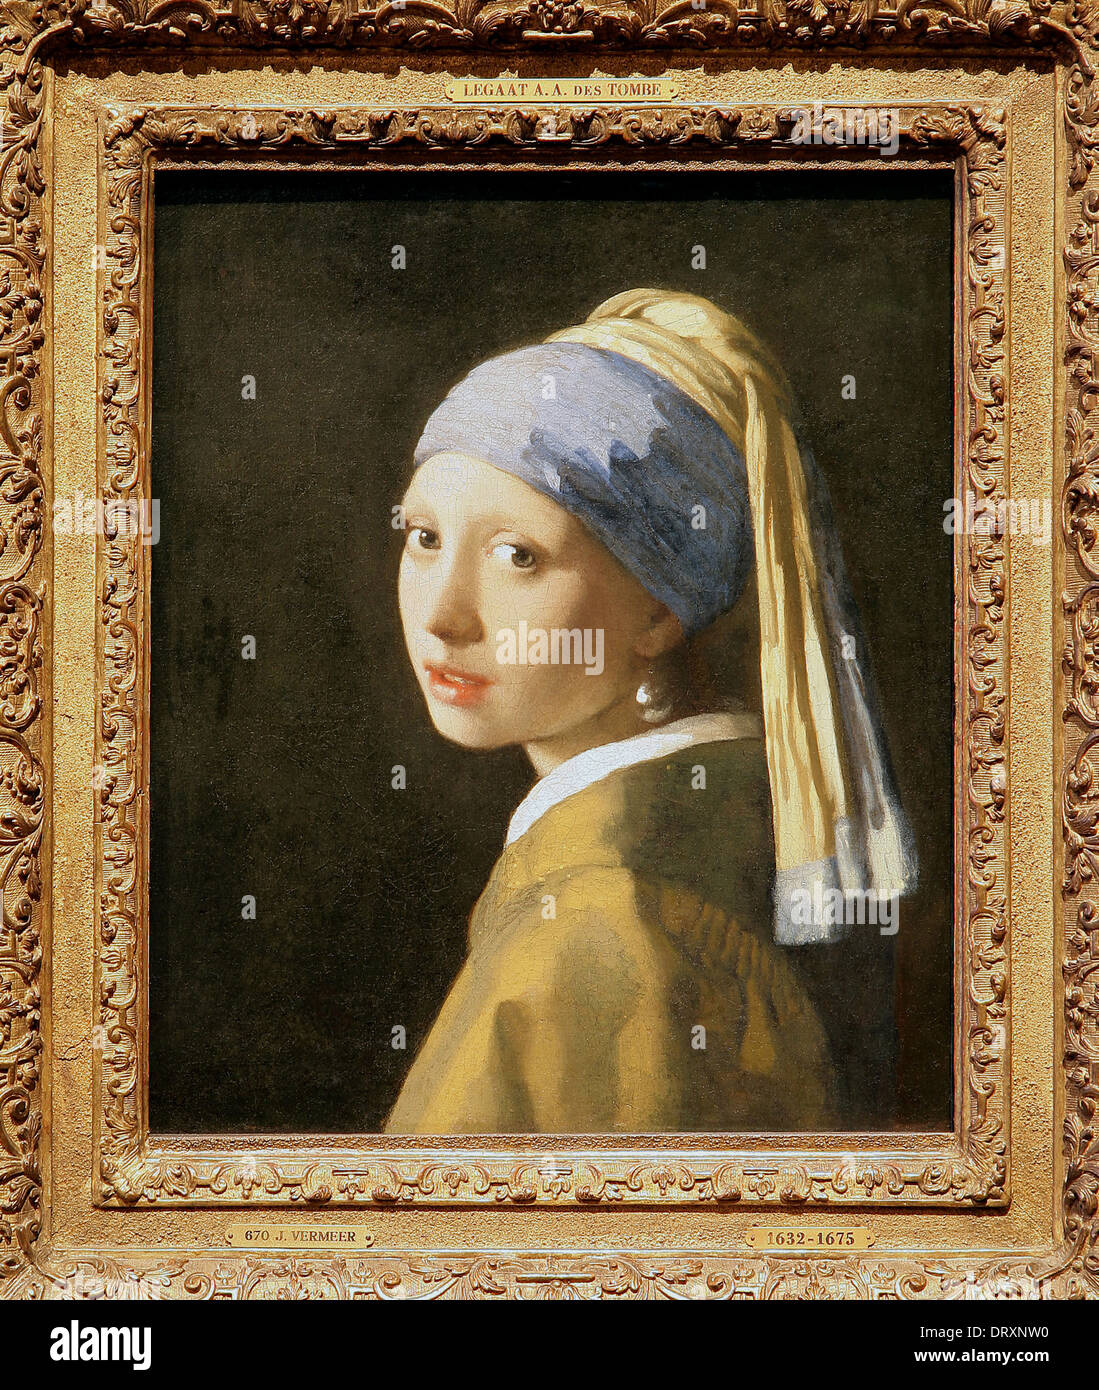 Mädchen mit Perlenohrring (1665) A ‘tronie des niederländischen Malers Johannes Vermeer 1632-1675. Vermeers berühmtestes Gemälde. Kein Porträt, sondern eine ‘tronie'. Stockfoto